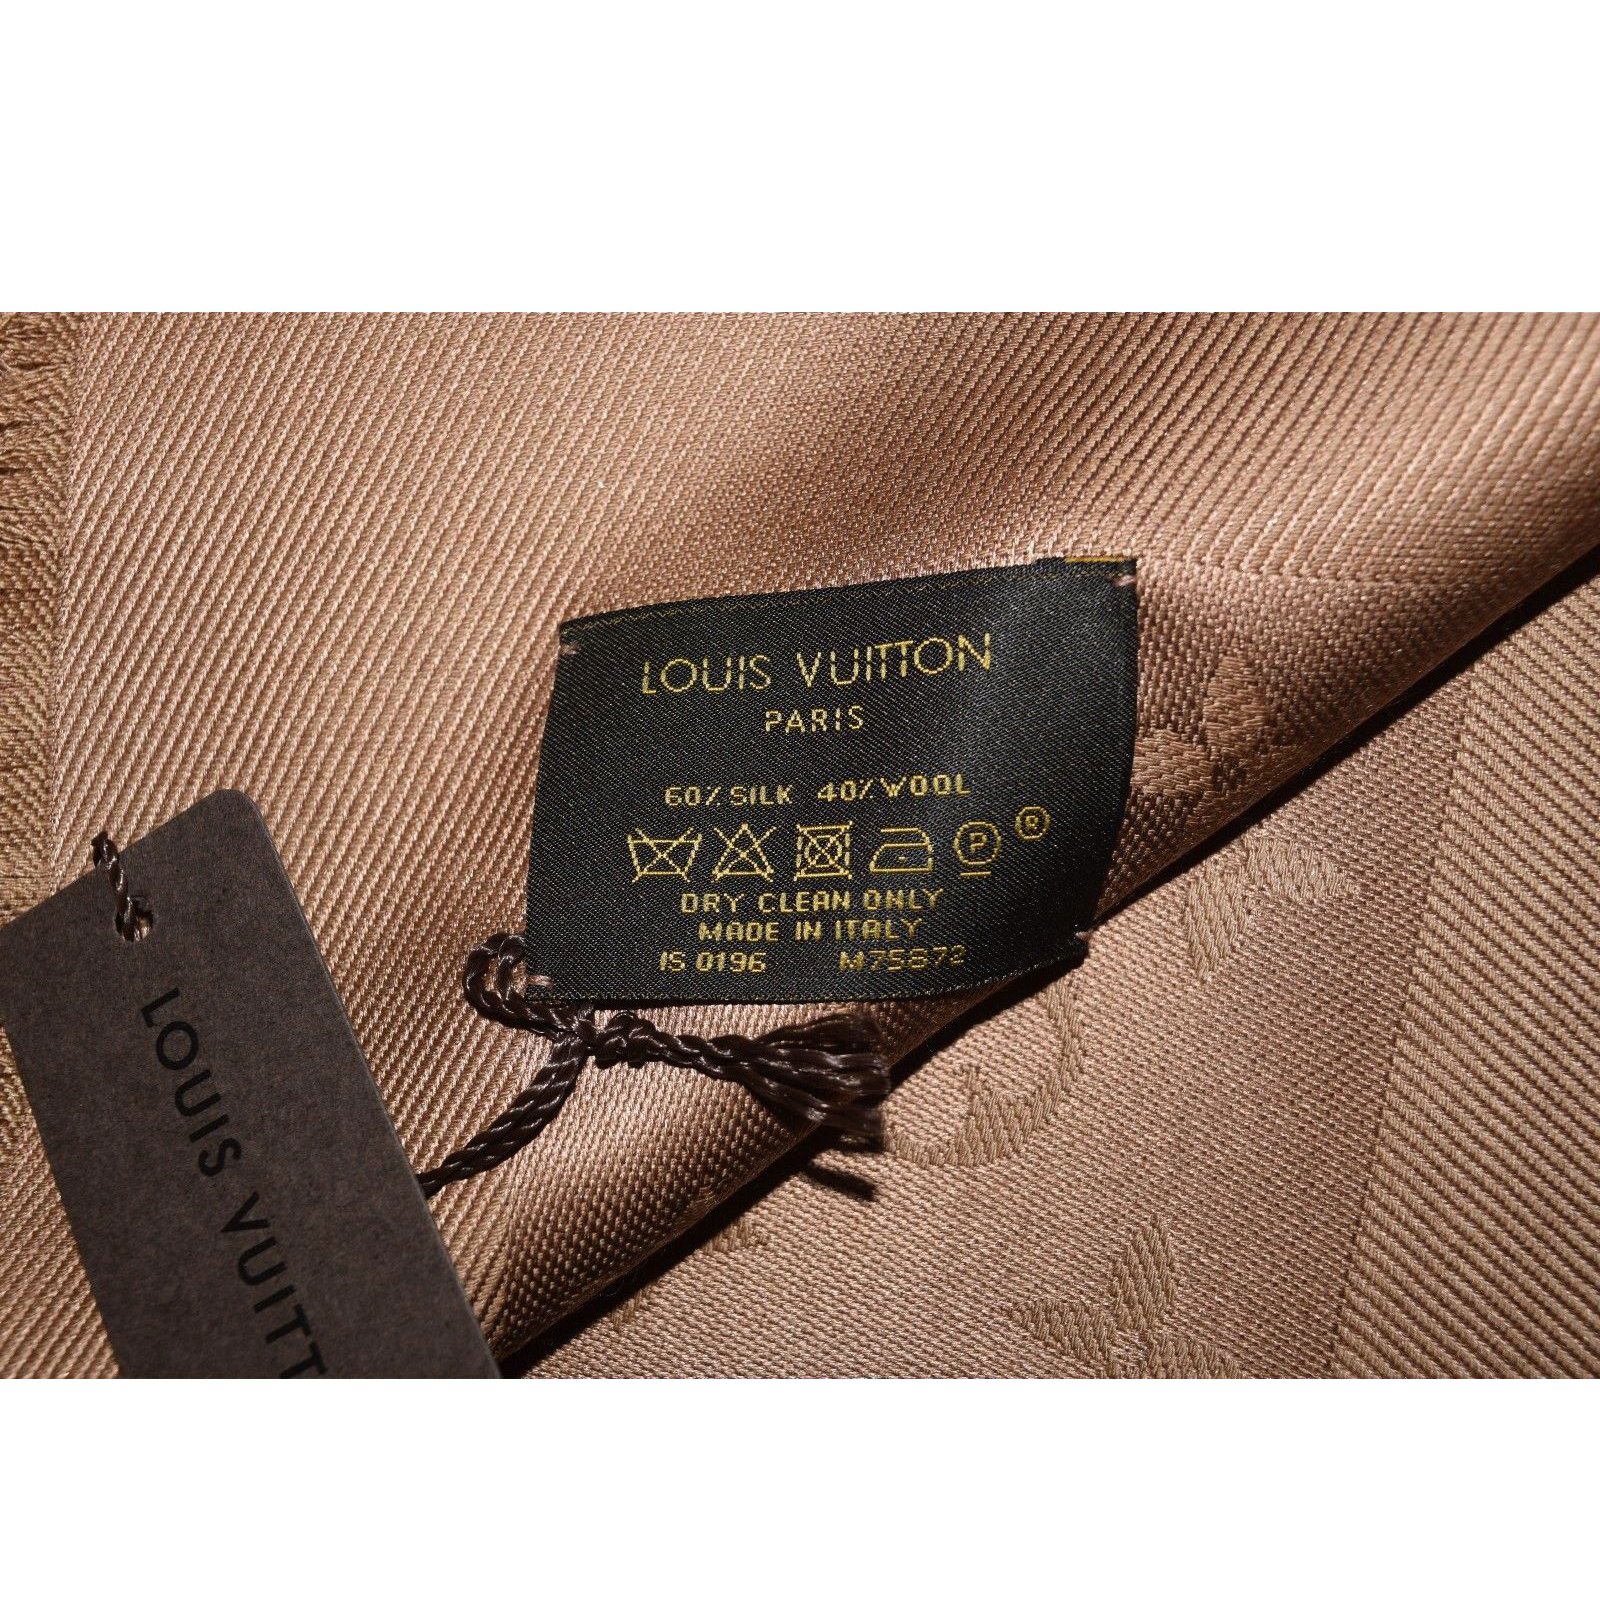 Louis Vuitton & Veuve Clicquot Foulard